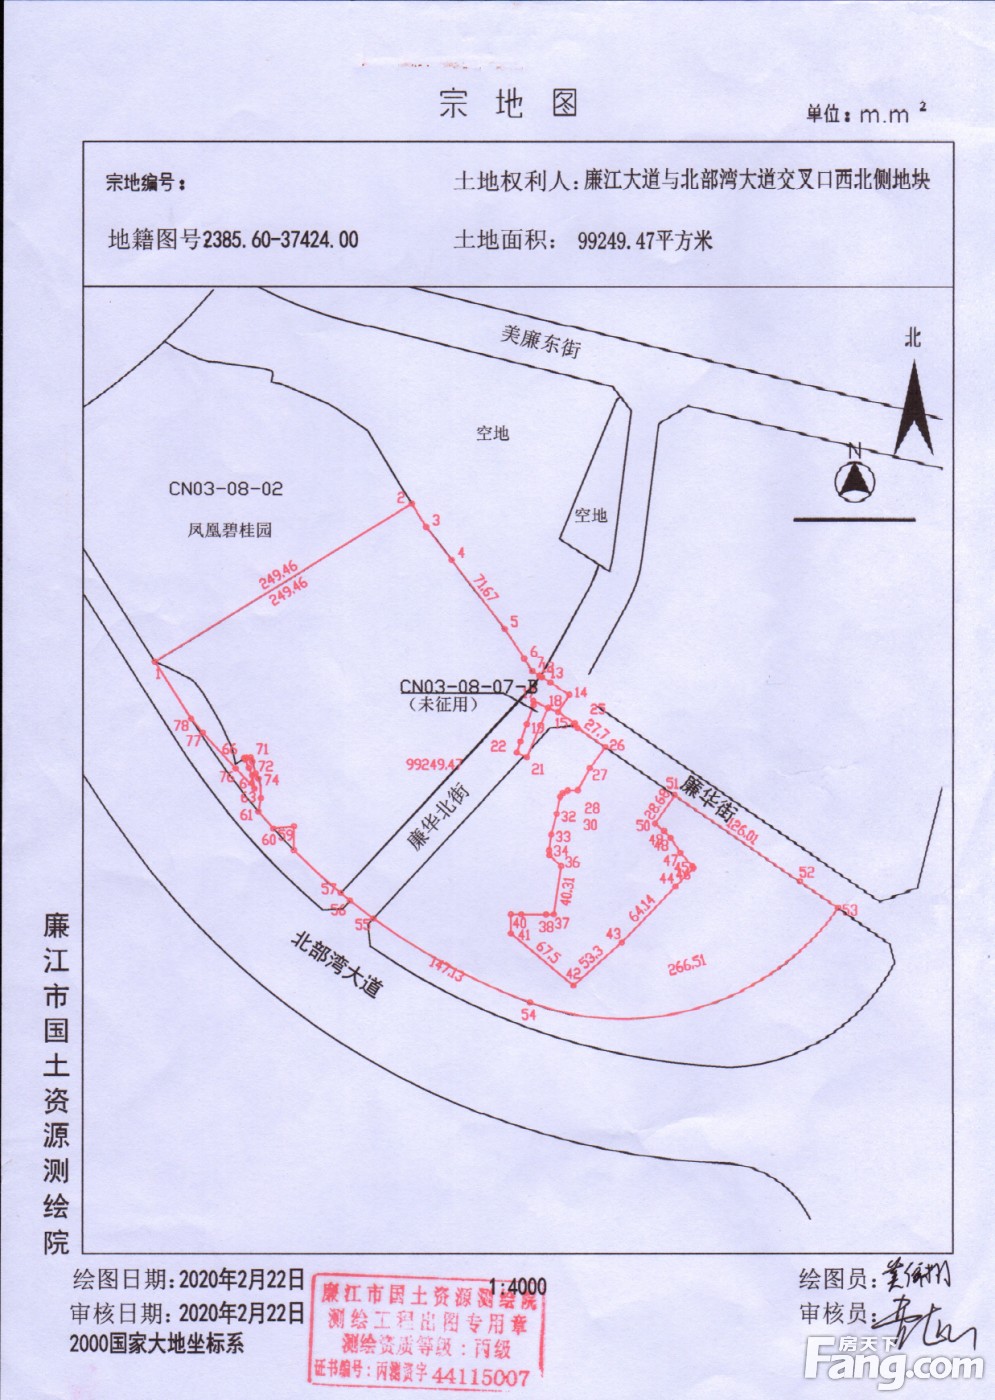 廉江市3宗地块挂牌出让:总供地面积约16万㎡ 总起拍价3.675亿元